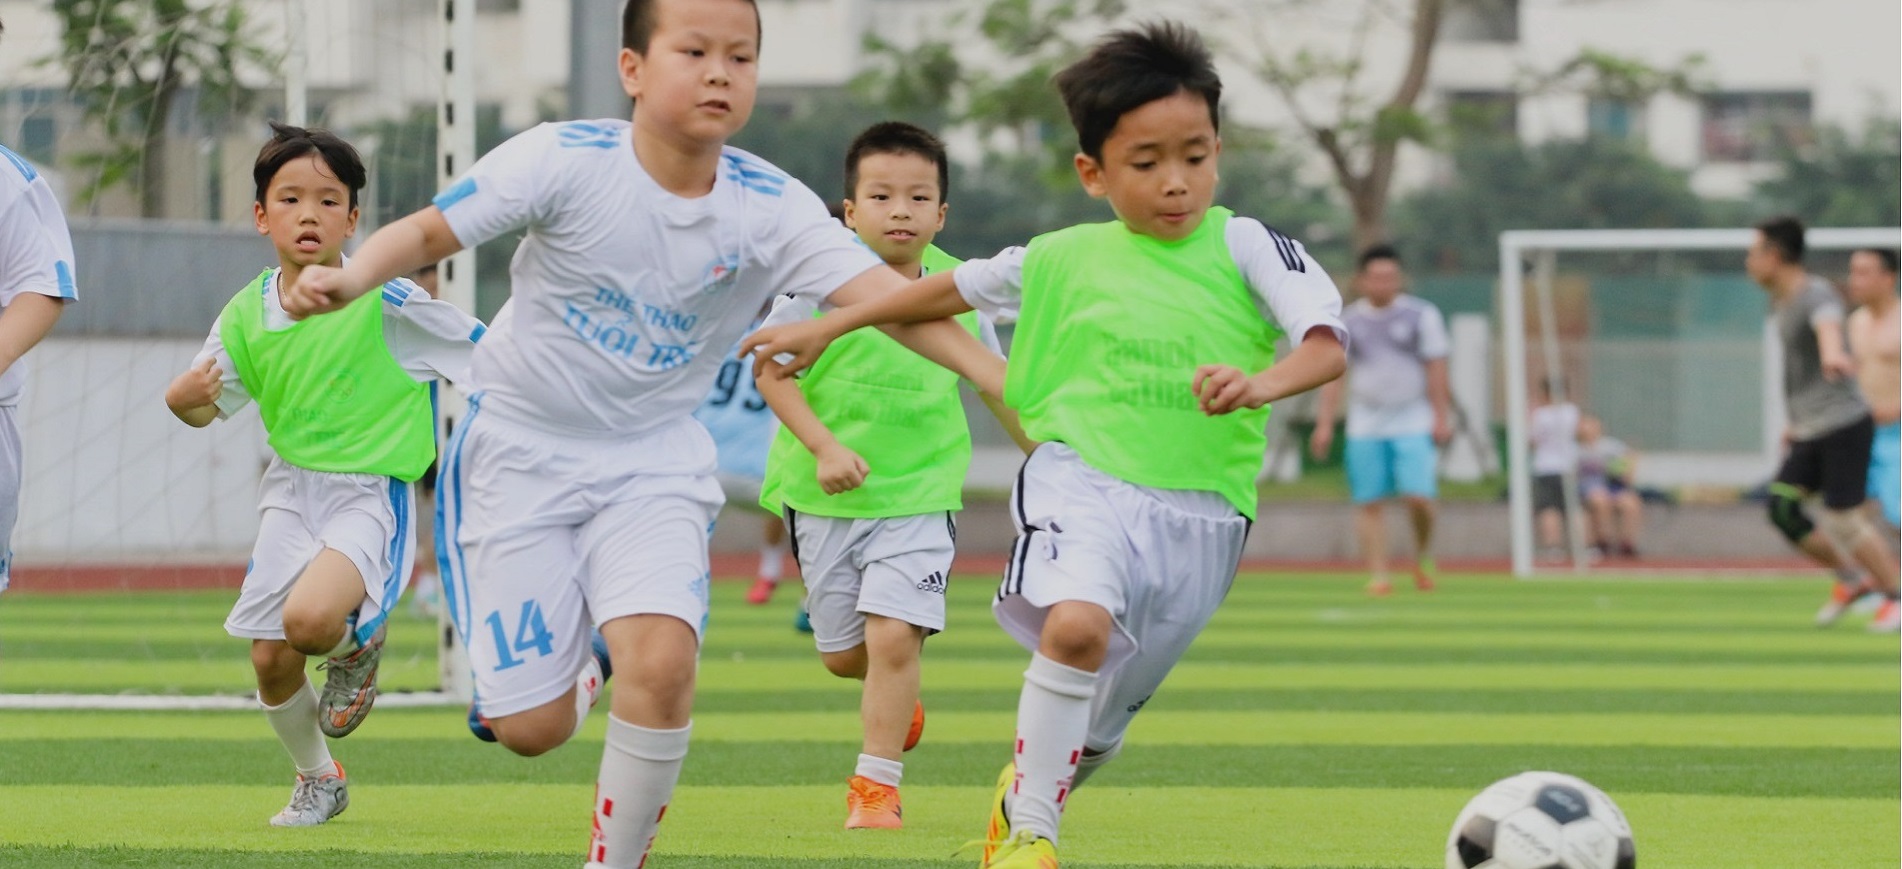 Sân bóng đá Bách Việt – Sân bóng chất lượng khu vực Cầu Giấy 6